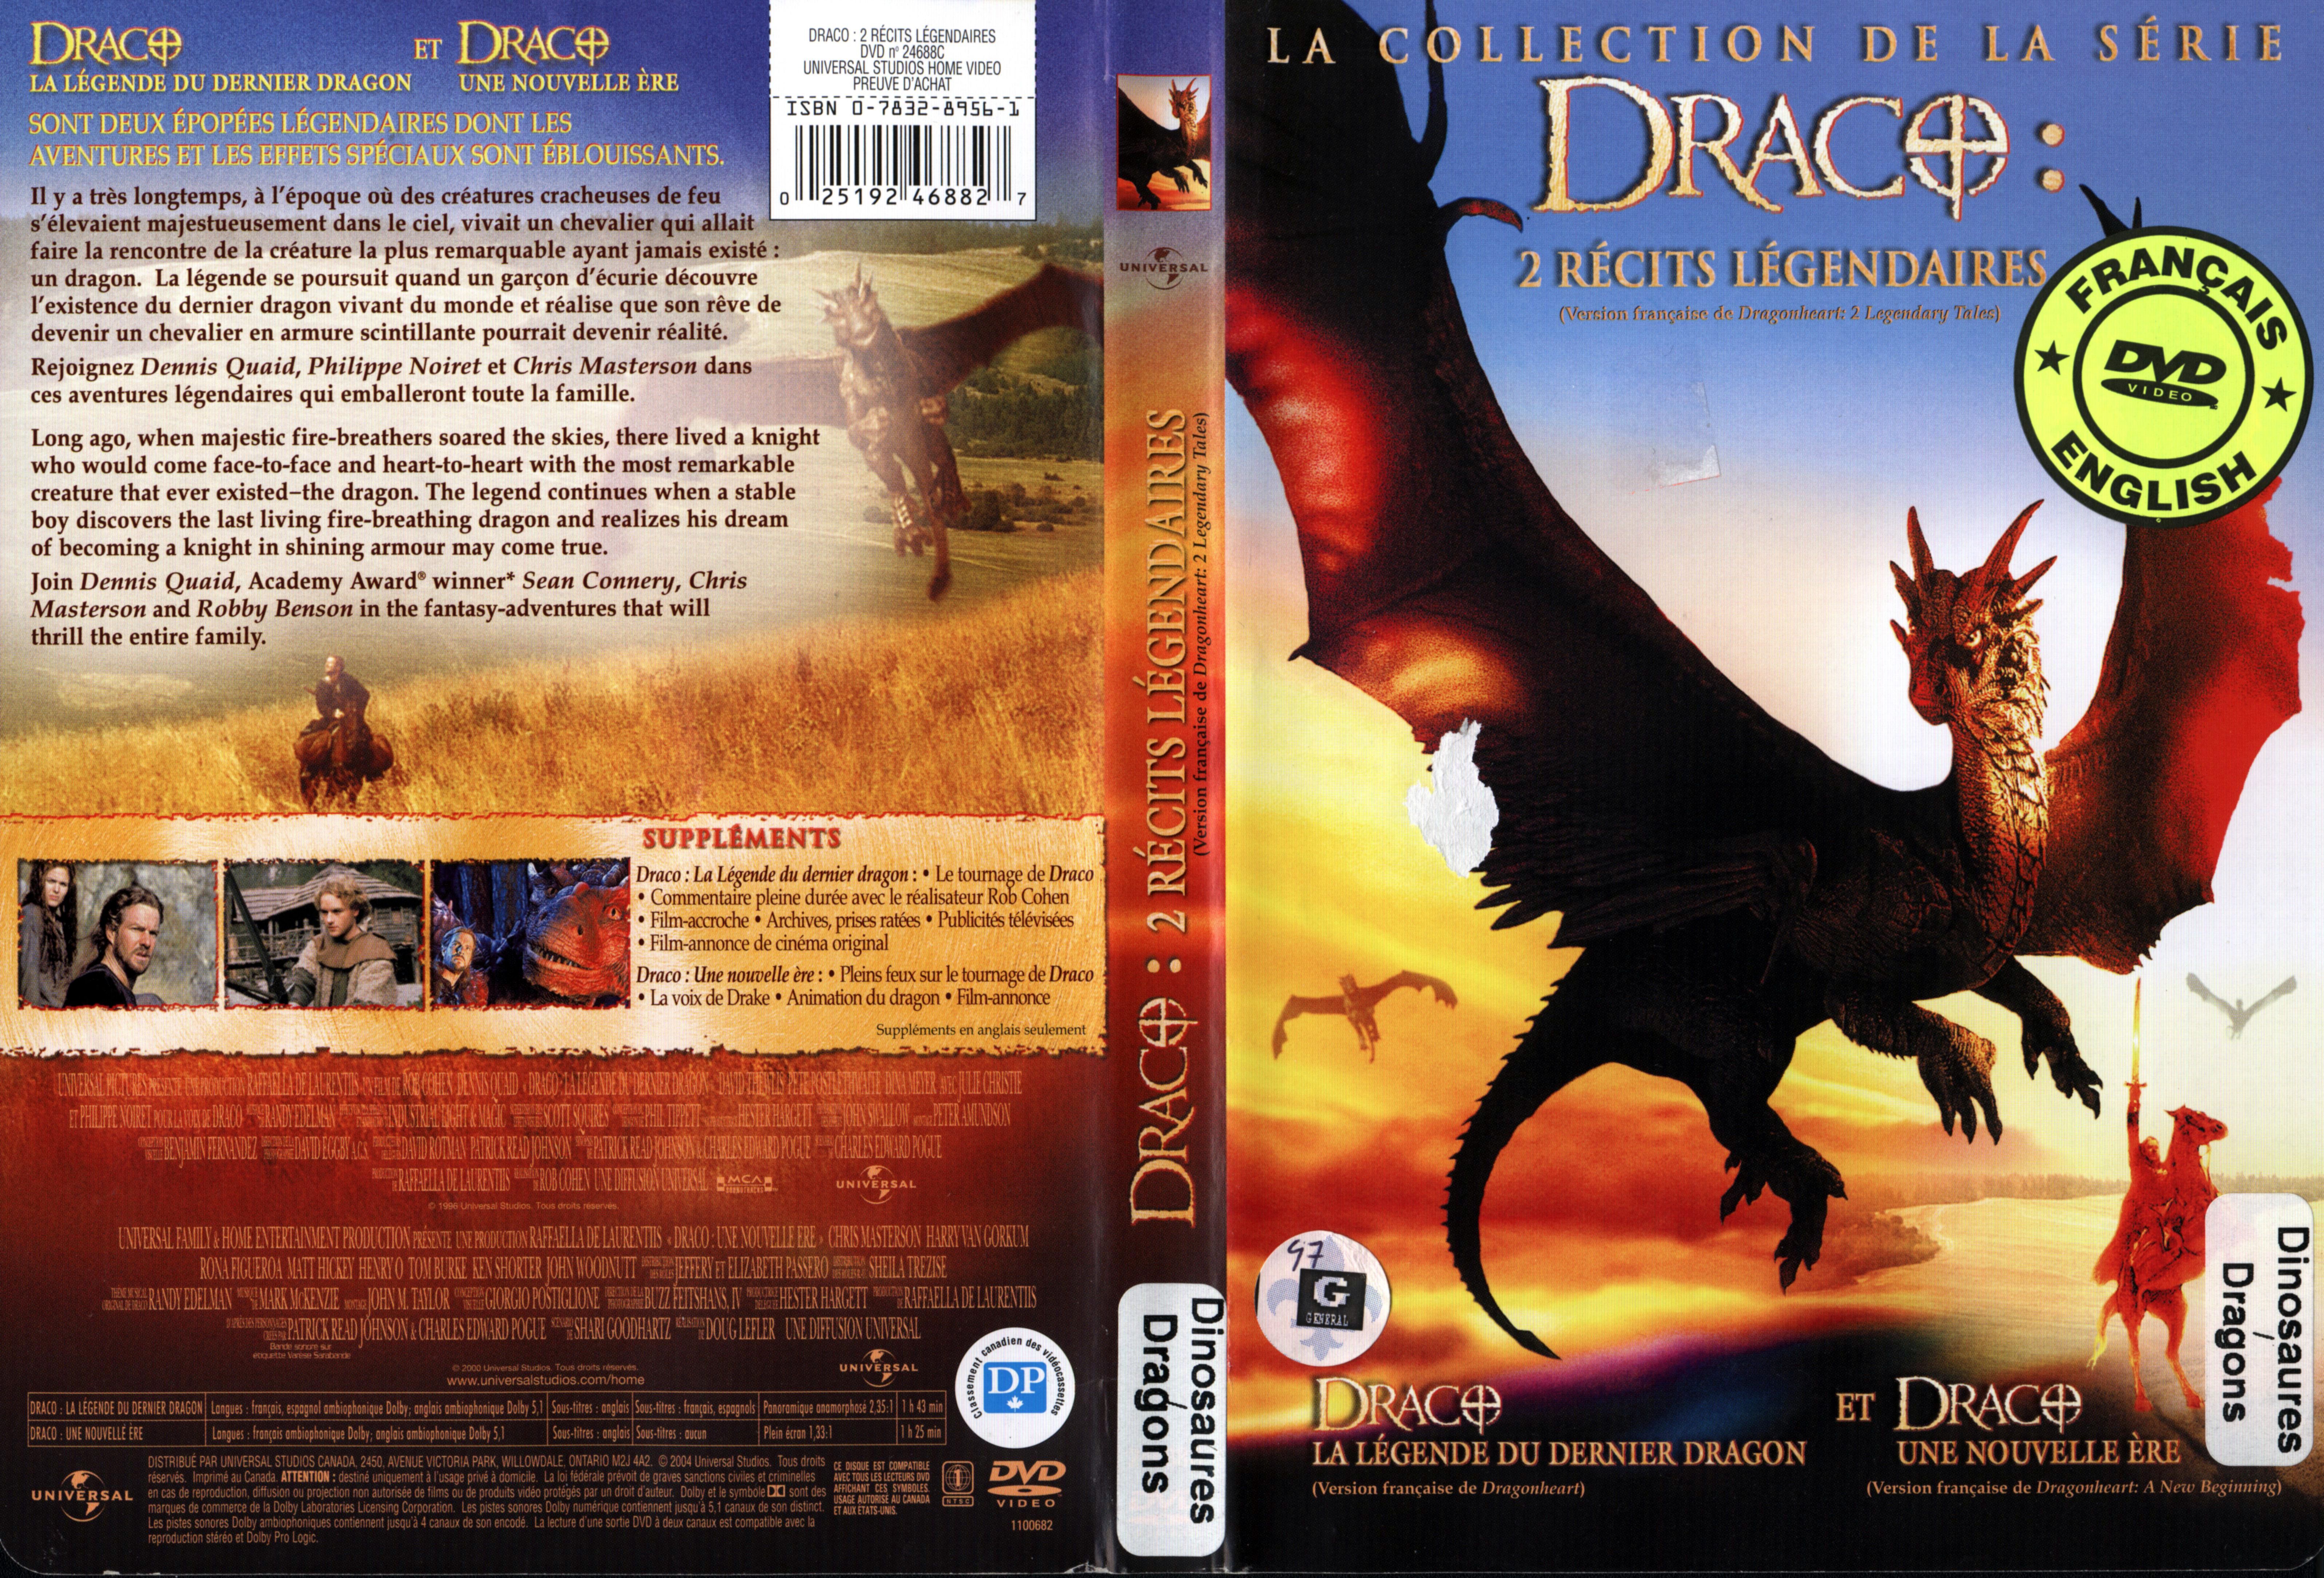 Jaquette DVD Draco 1 et 2